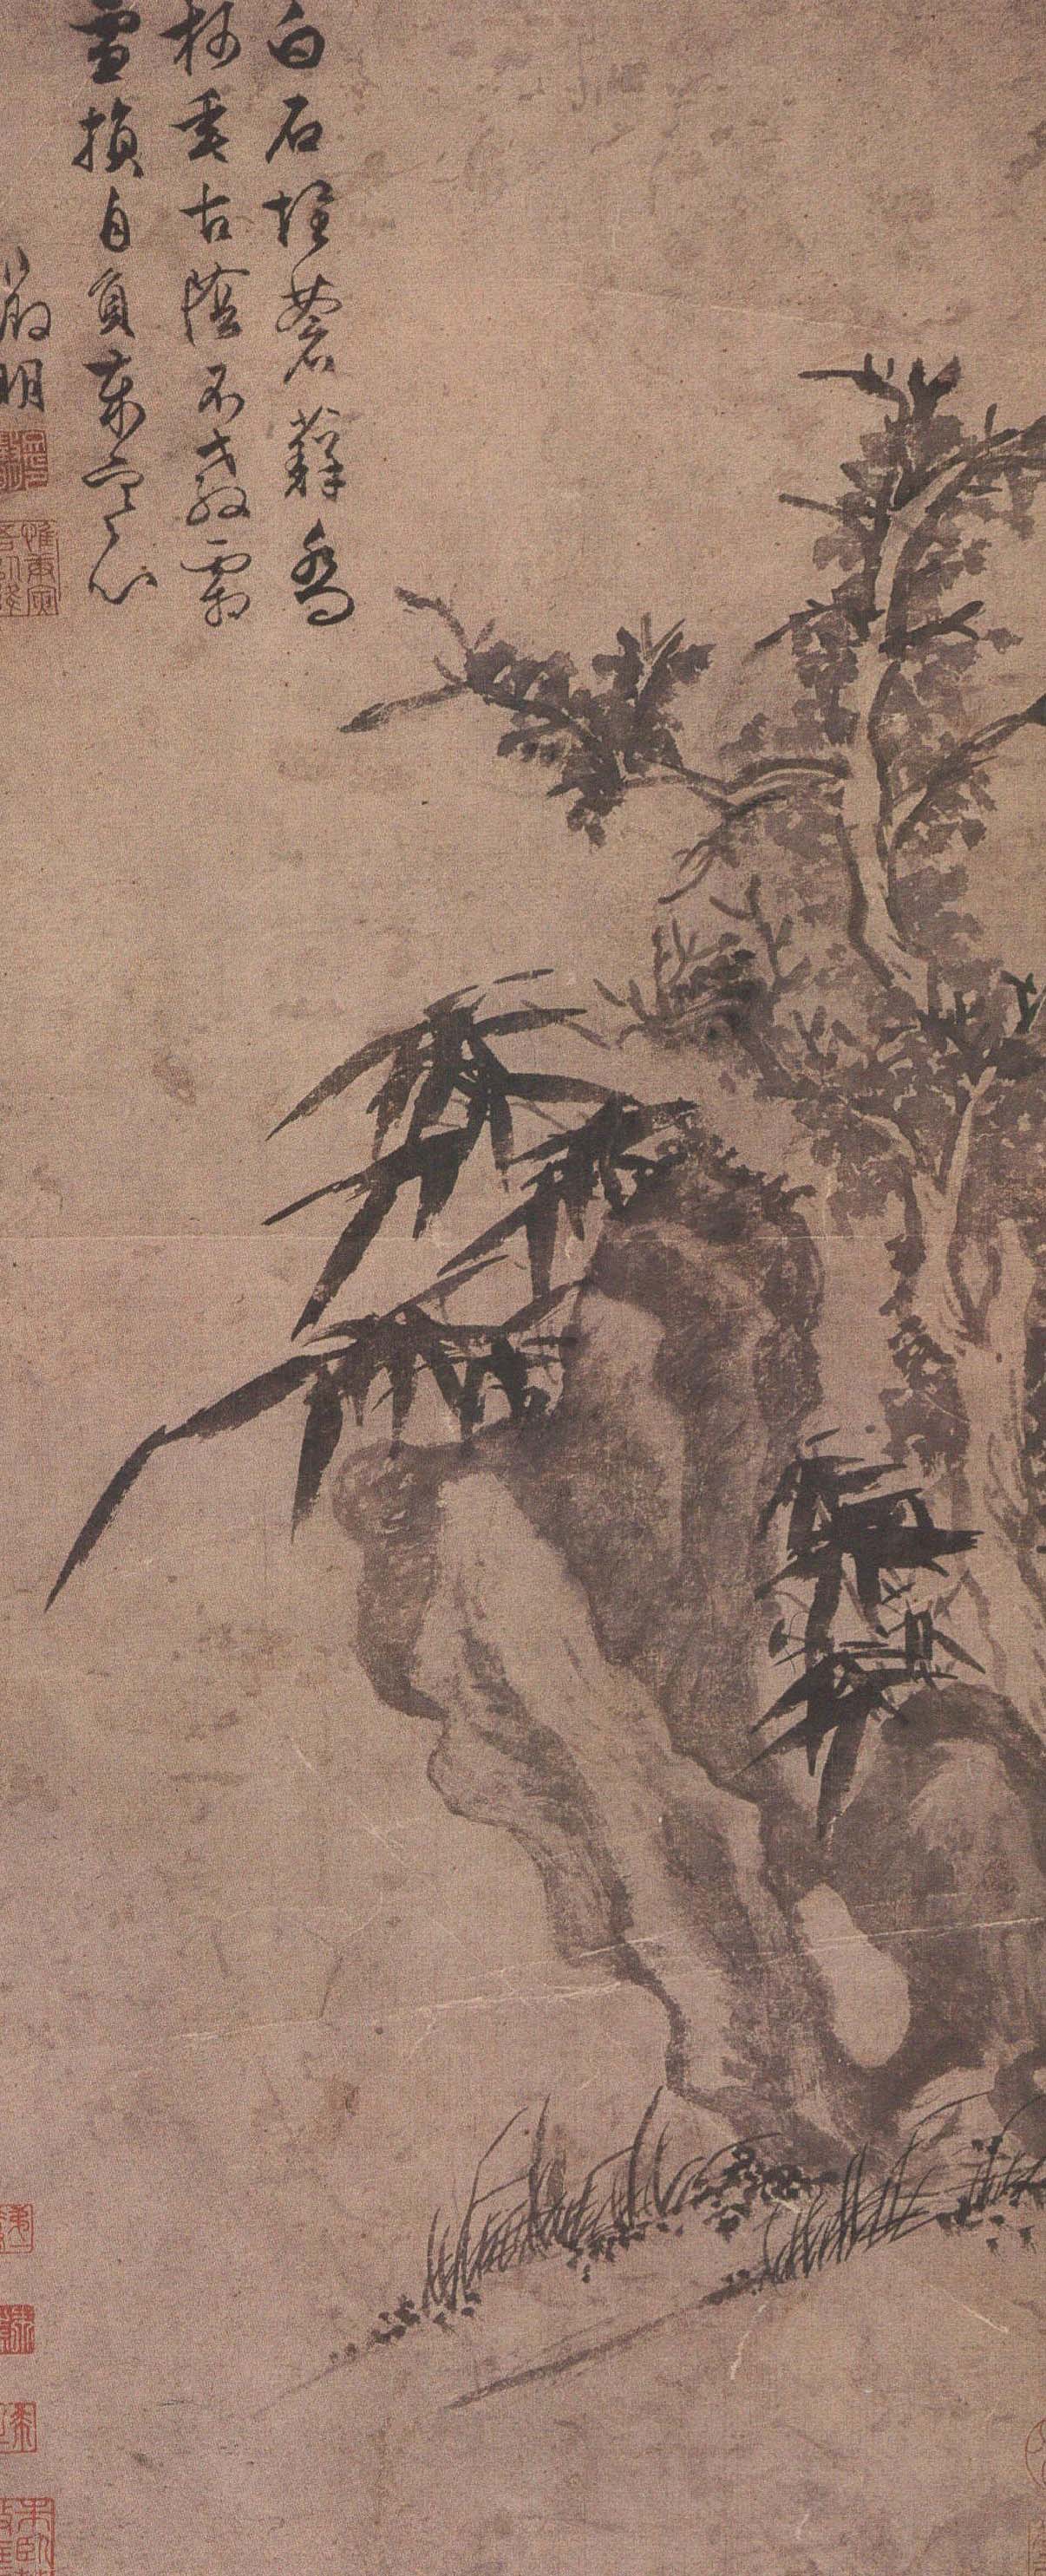 文徵明 《竹树石图》轴